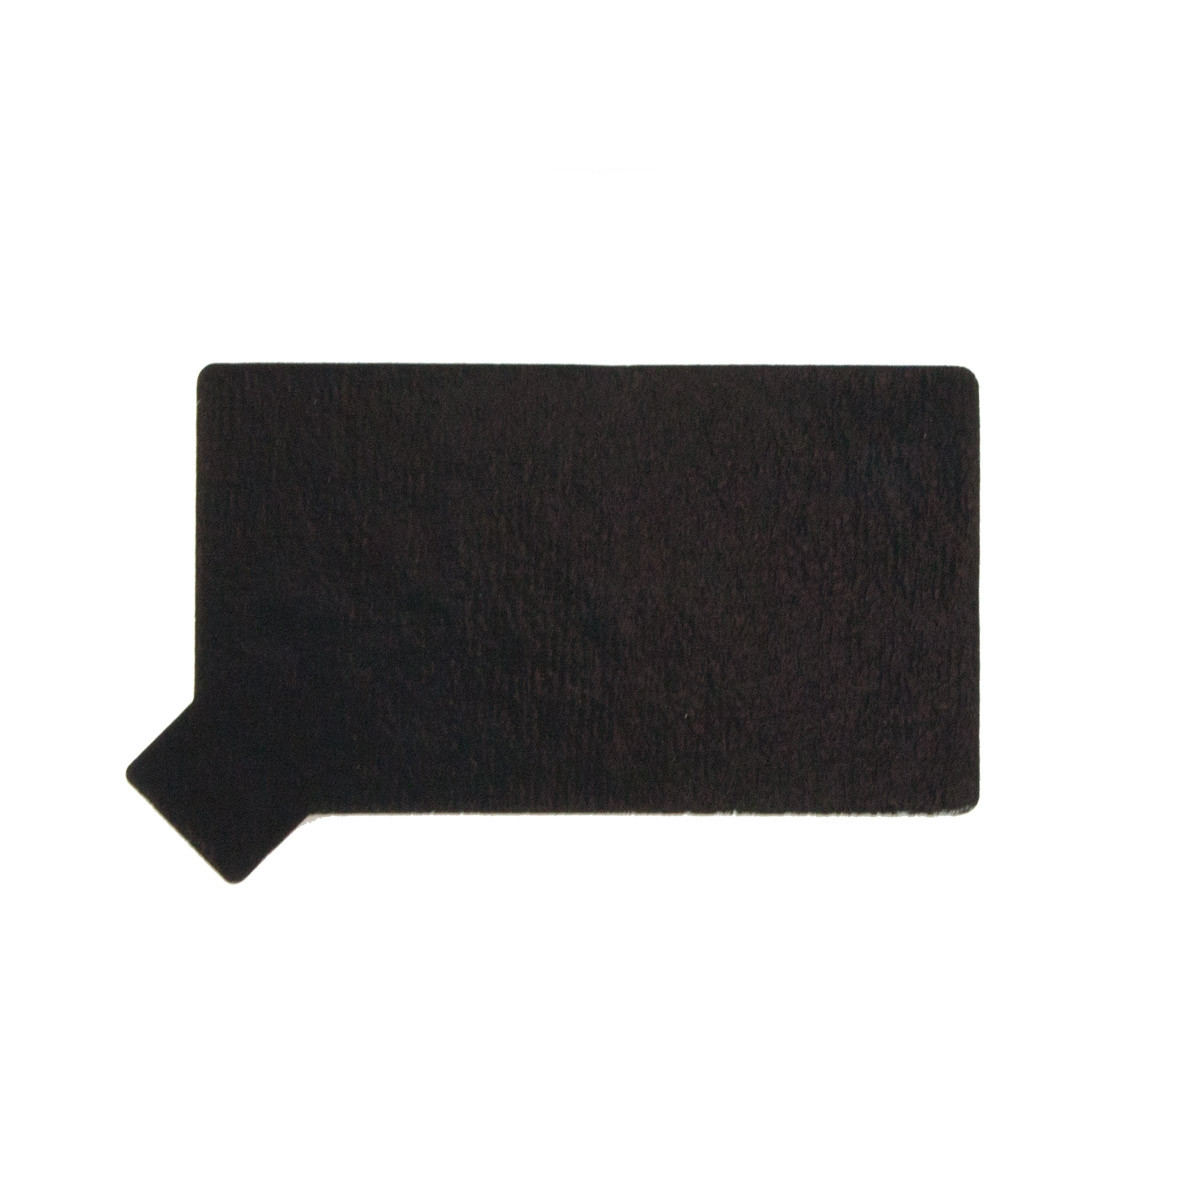 Taartkarton Groen/Zwart met lip 5,5x9 cm per stuk